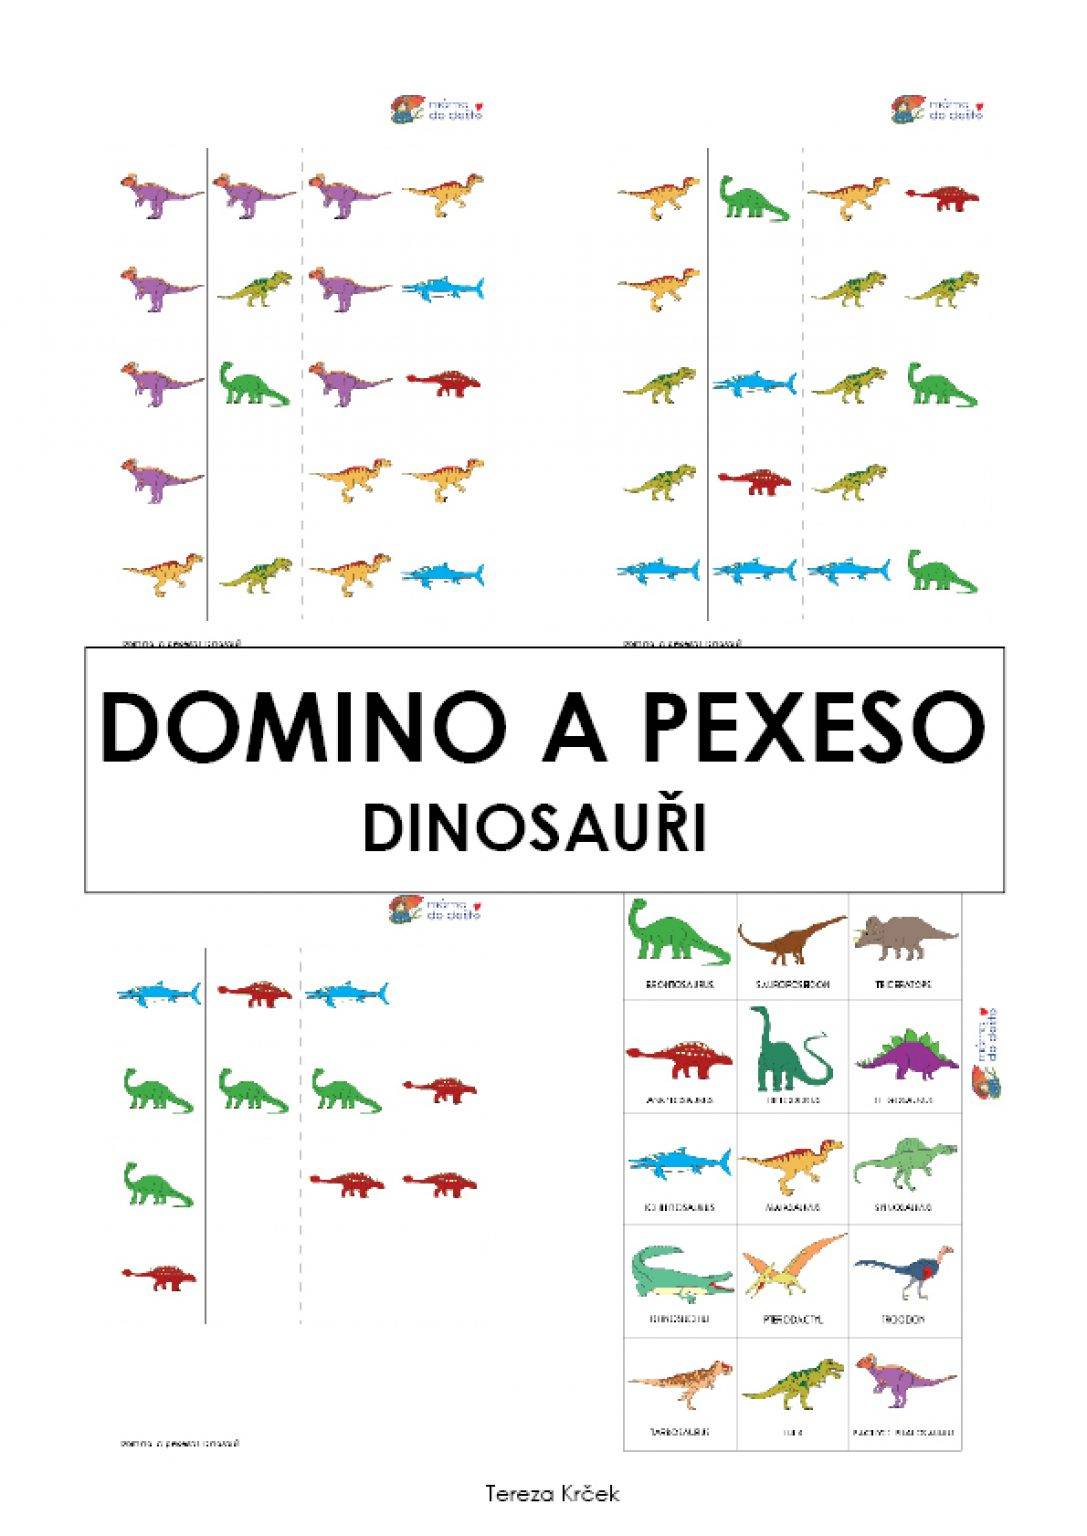 Domino a pexeso dinosauři v PDF